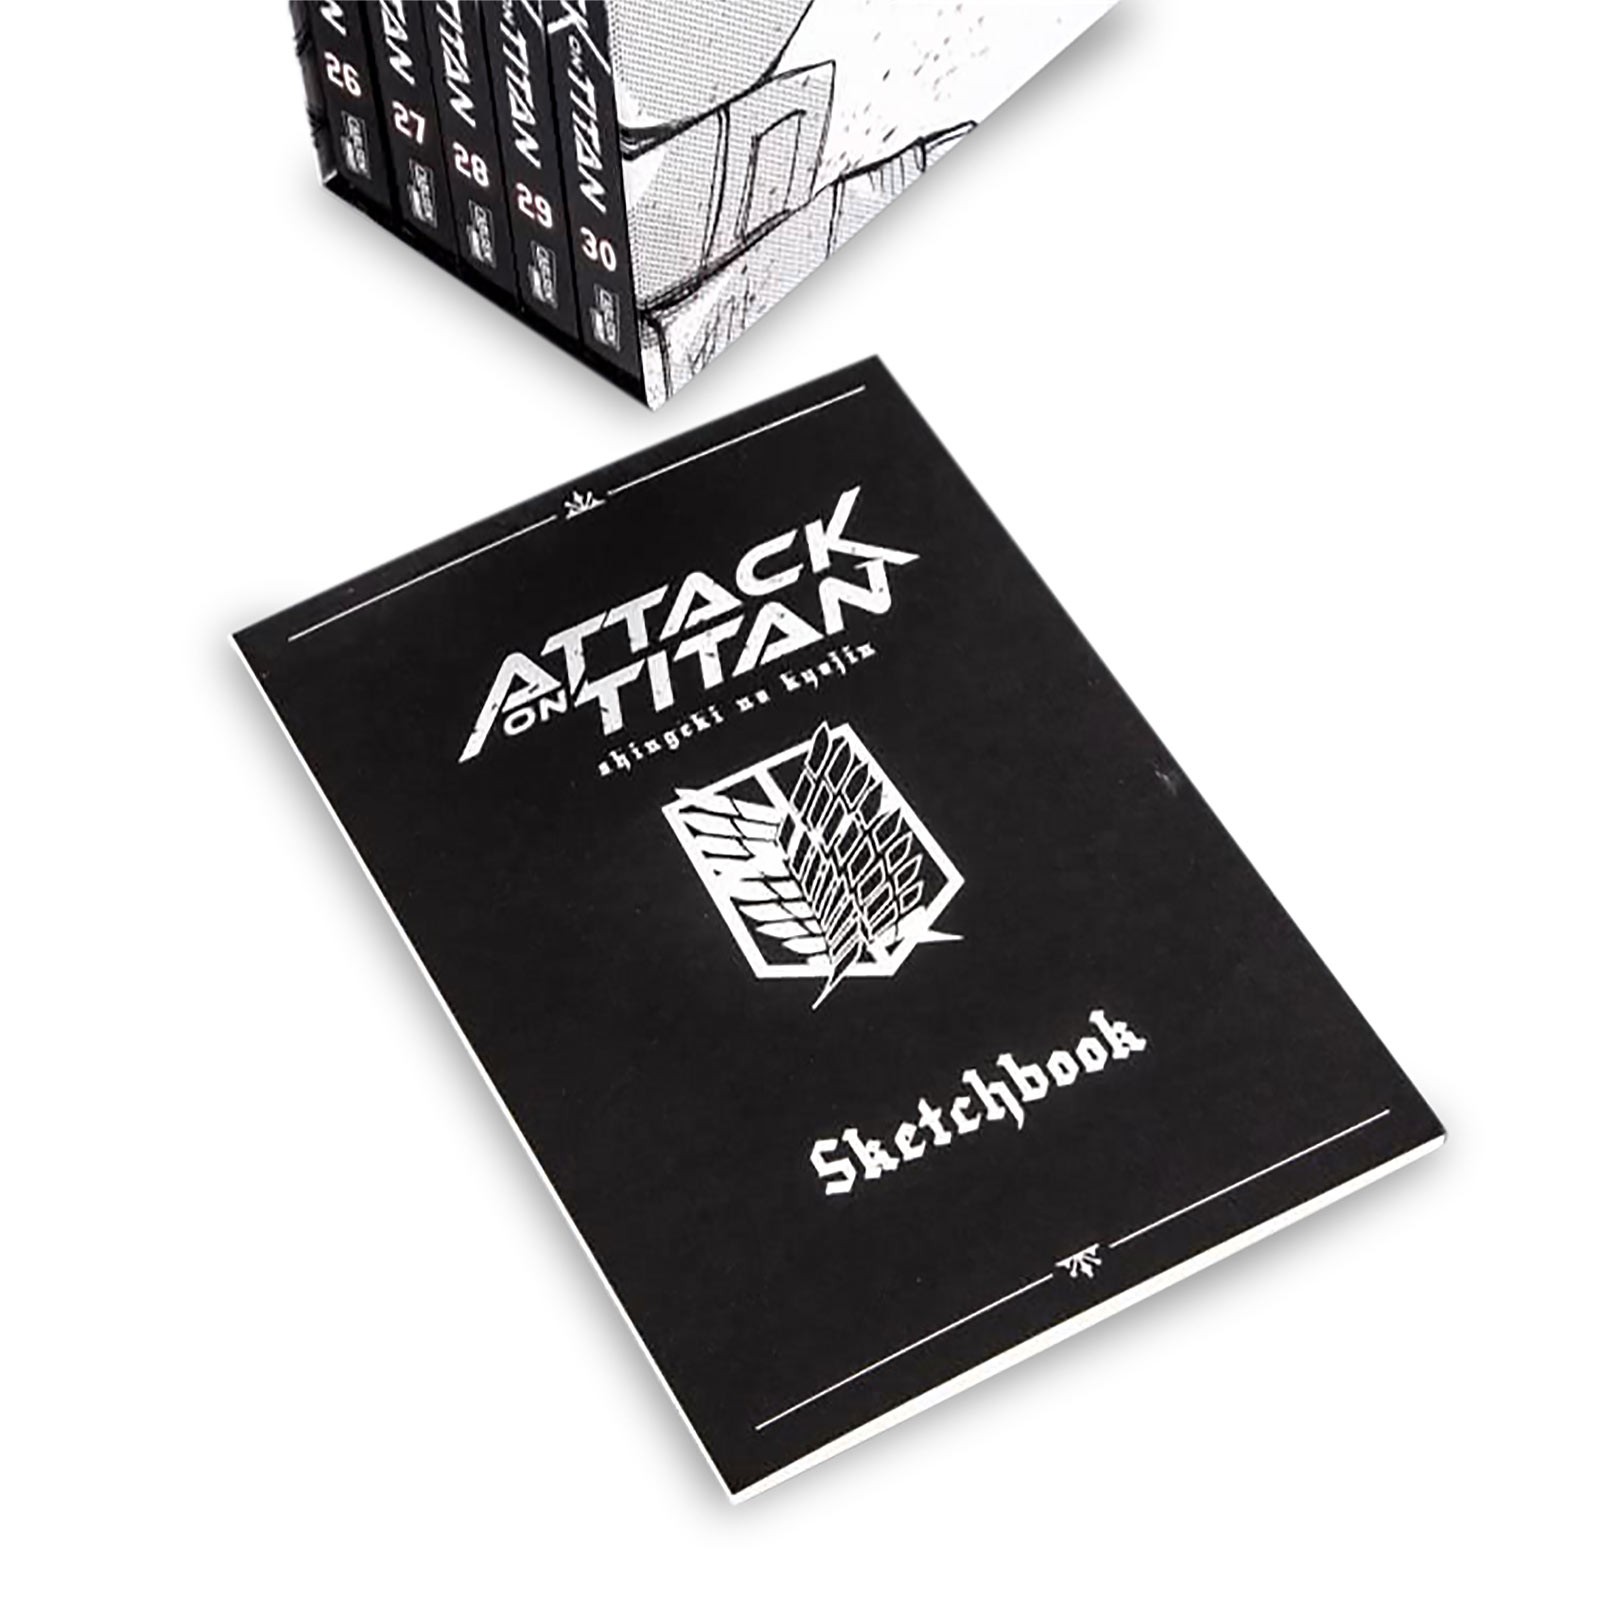 Attack on Titan - Coffret de Collection Volume 26-30